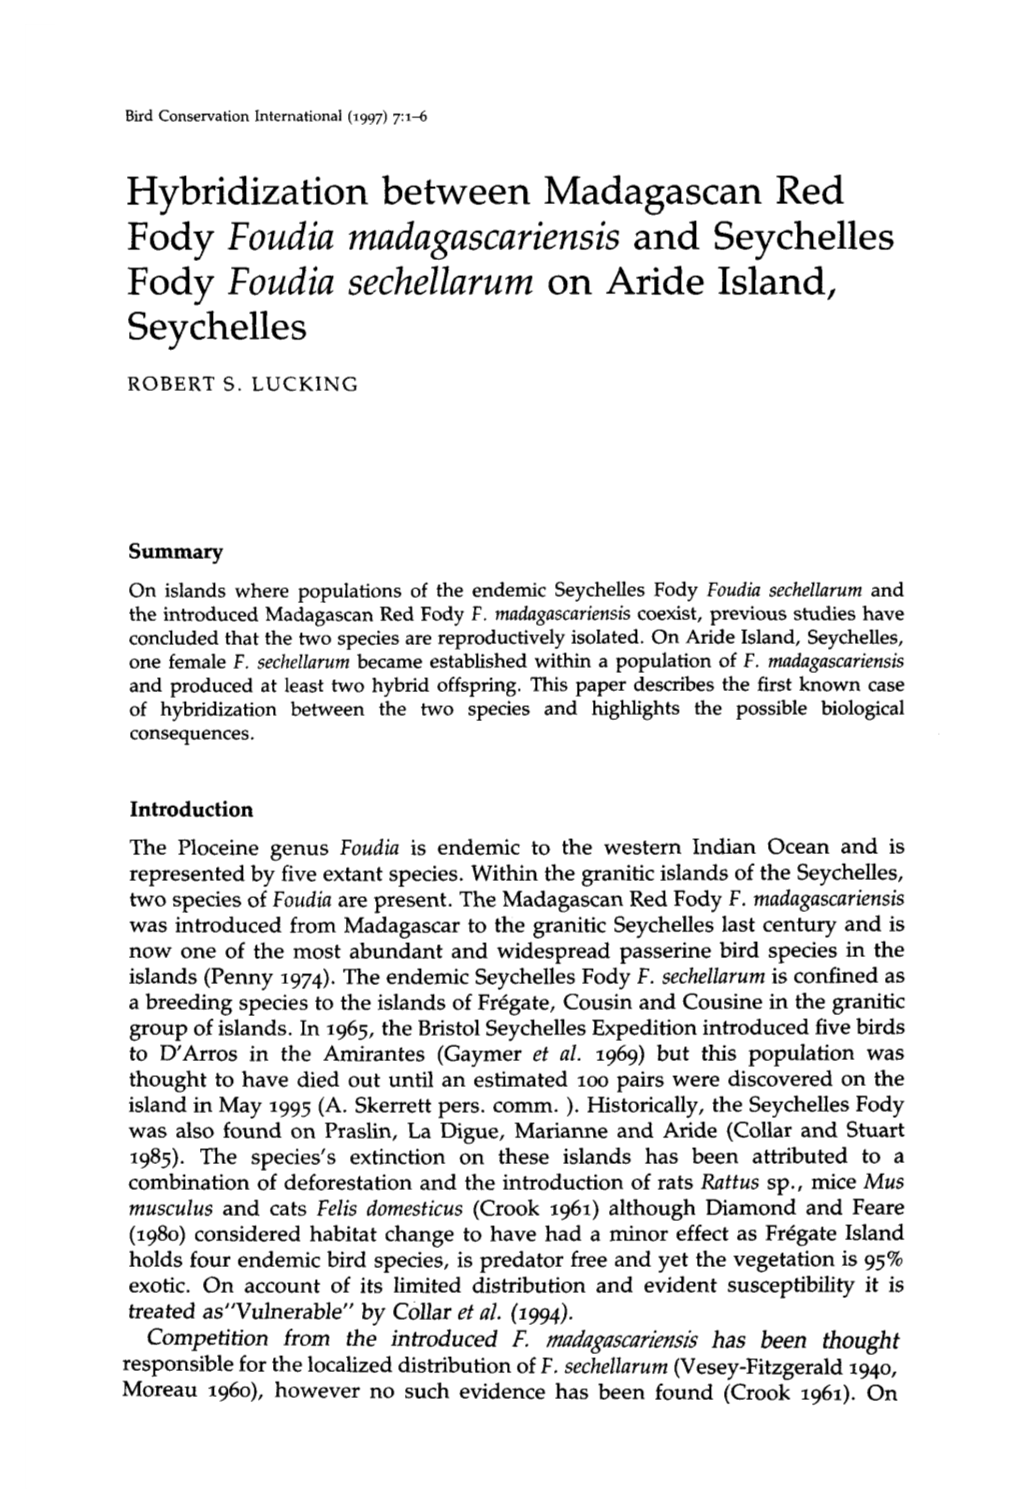 Hybridization Between Madagascan Red Fody Foudia Madagascariensis and Seychelles Fody Foudia Sechellarum on Aride Island, Seychelles